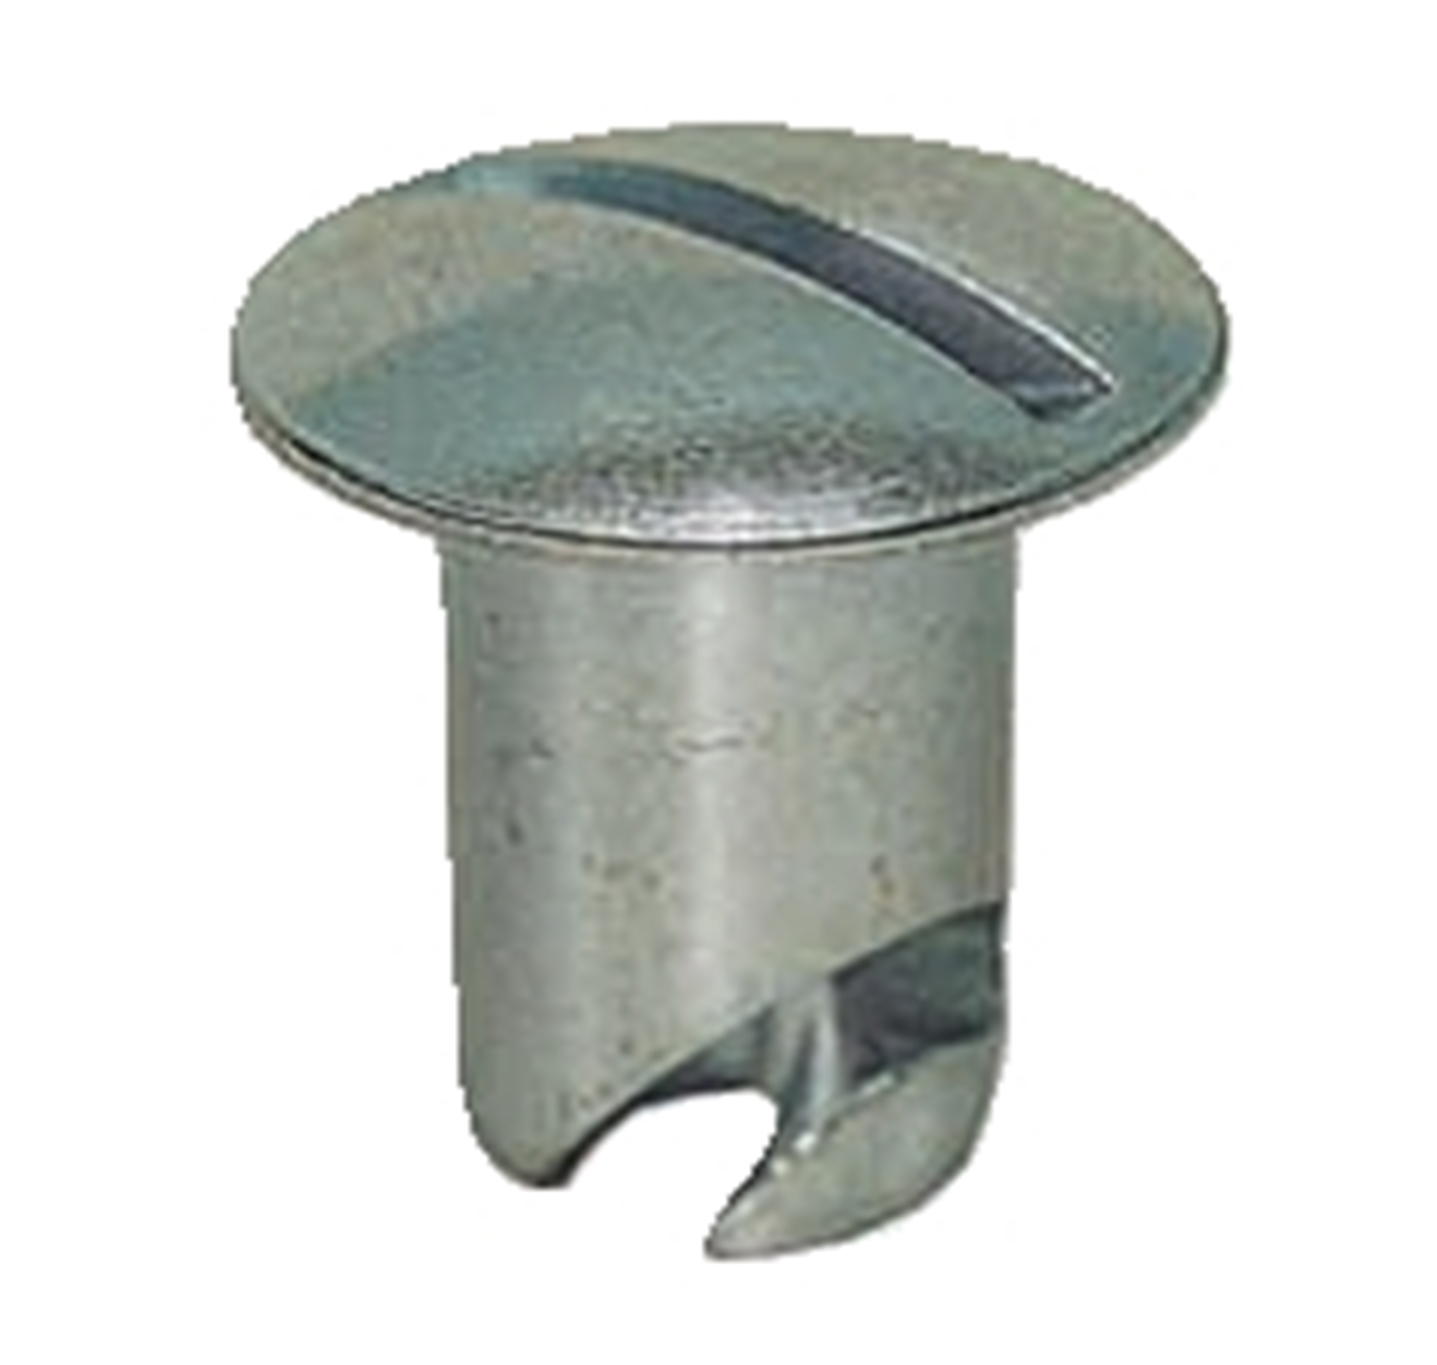 Panelfast 7/16" Aluminum Oval Head .650" Grip